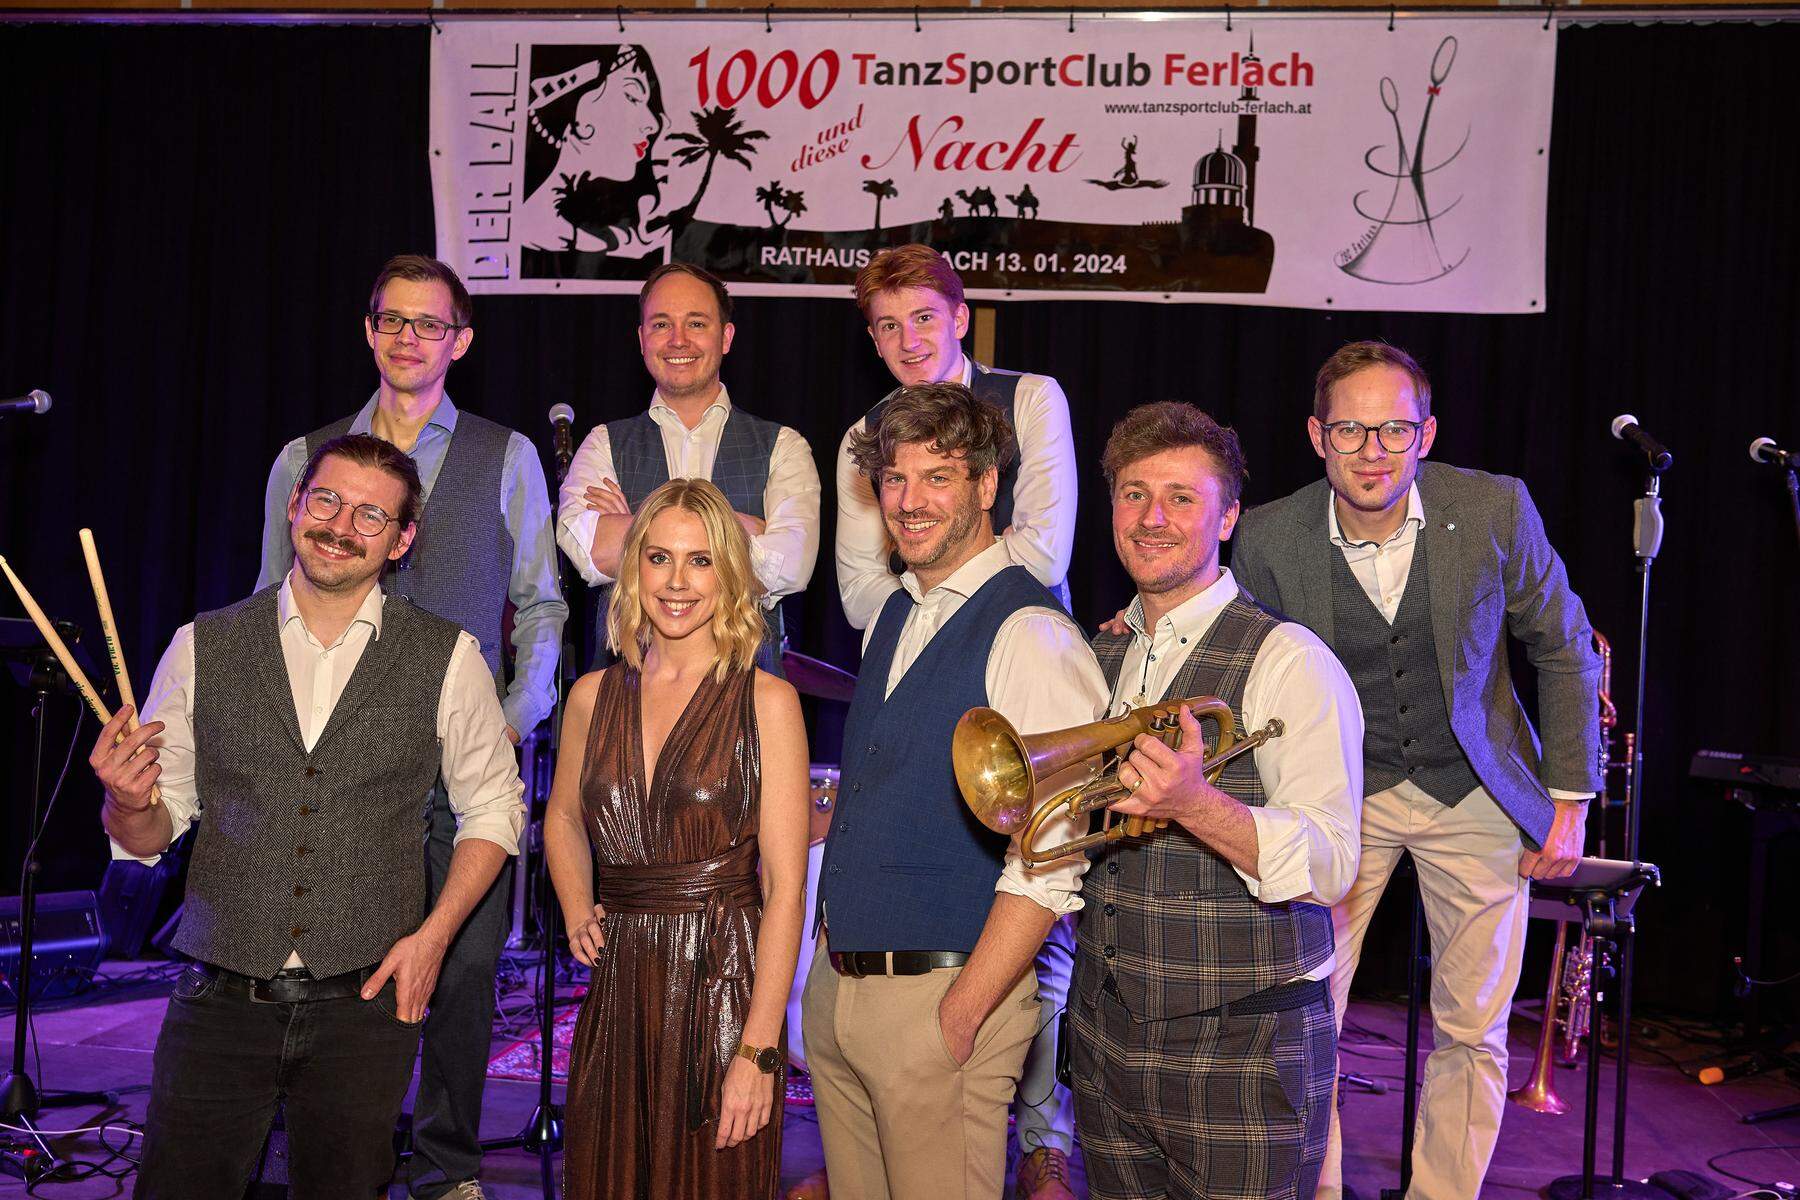 Tanzsportclub Ferlach | „1000 und diese Nacht“, ein rauschendes Fest in Ferlach